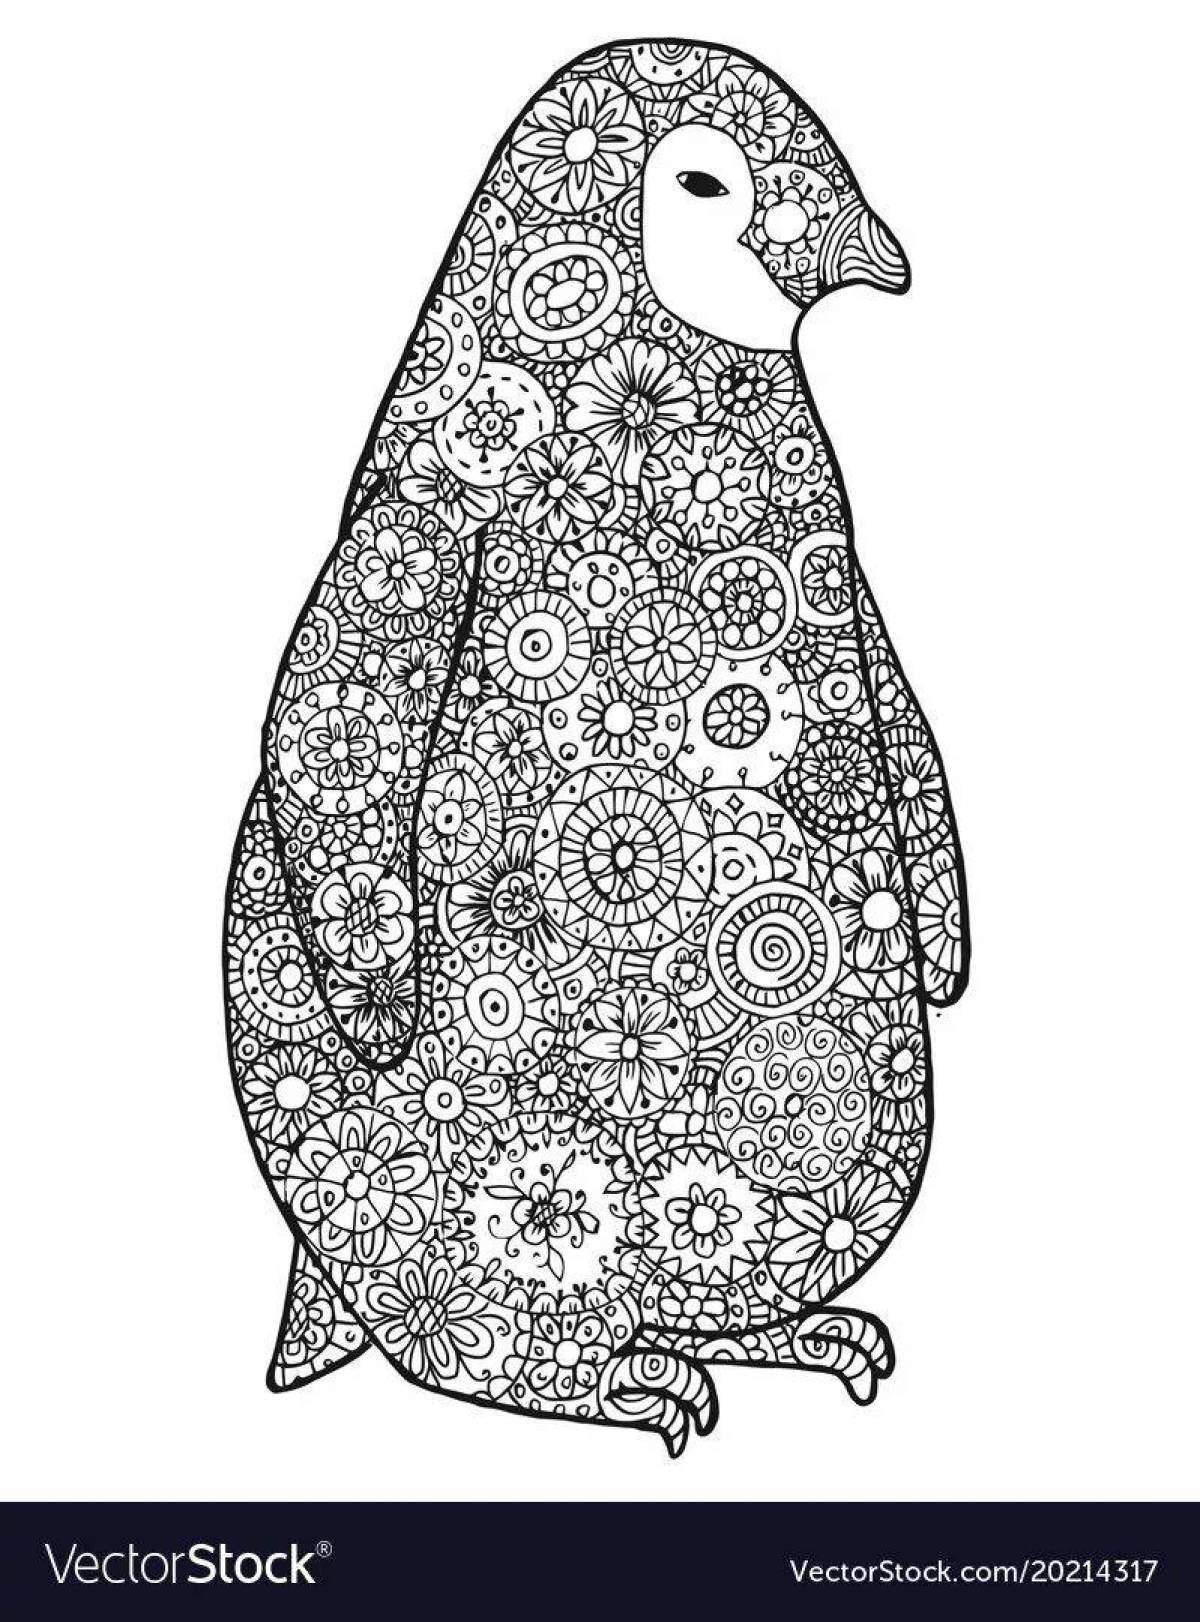 Антистресс пингвин #16